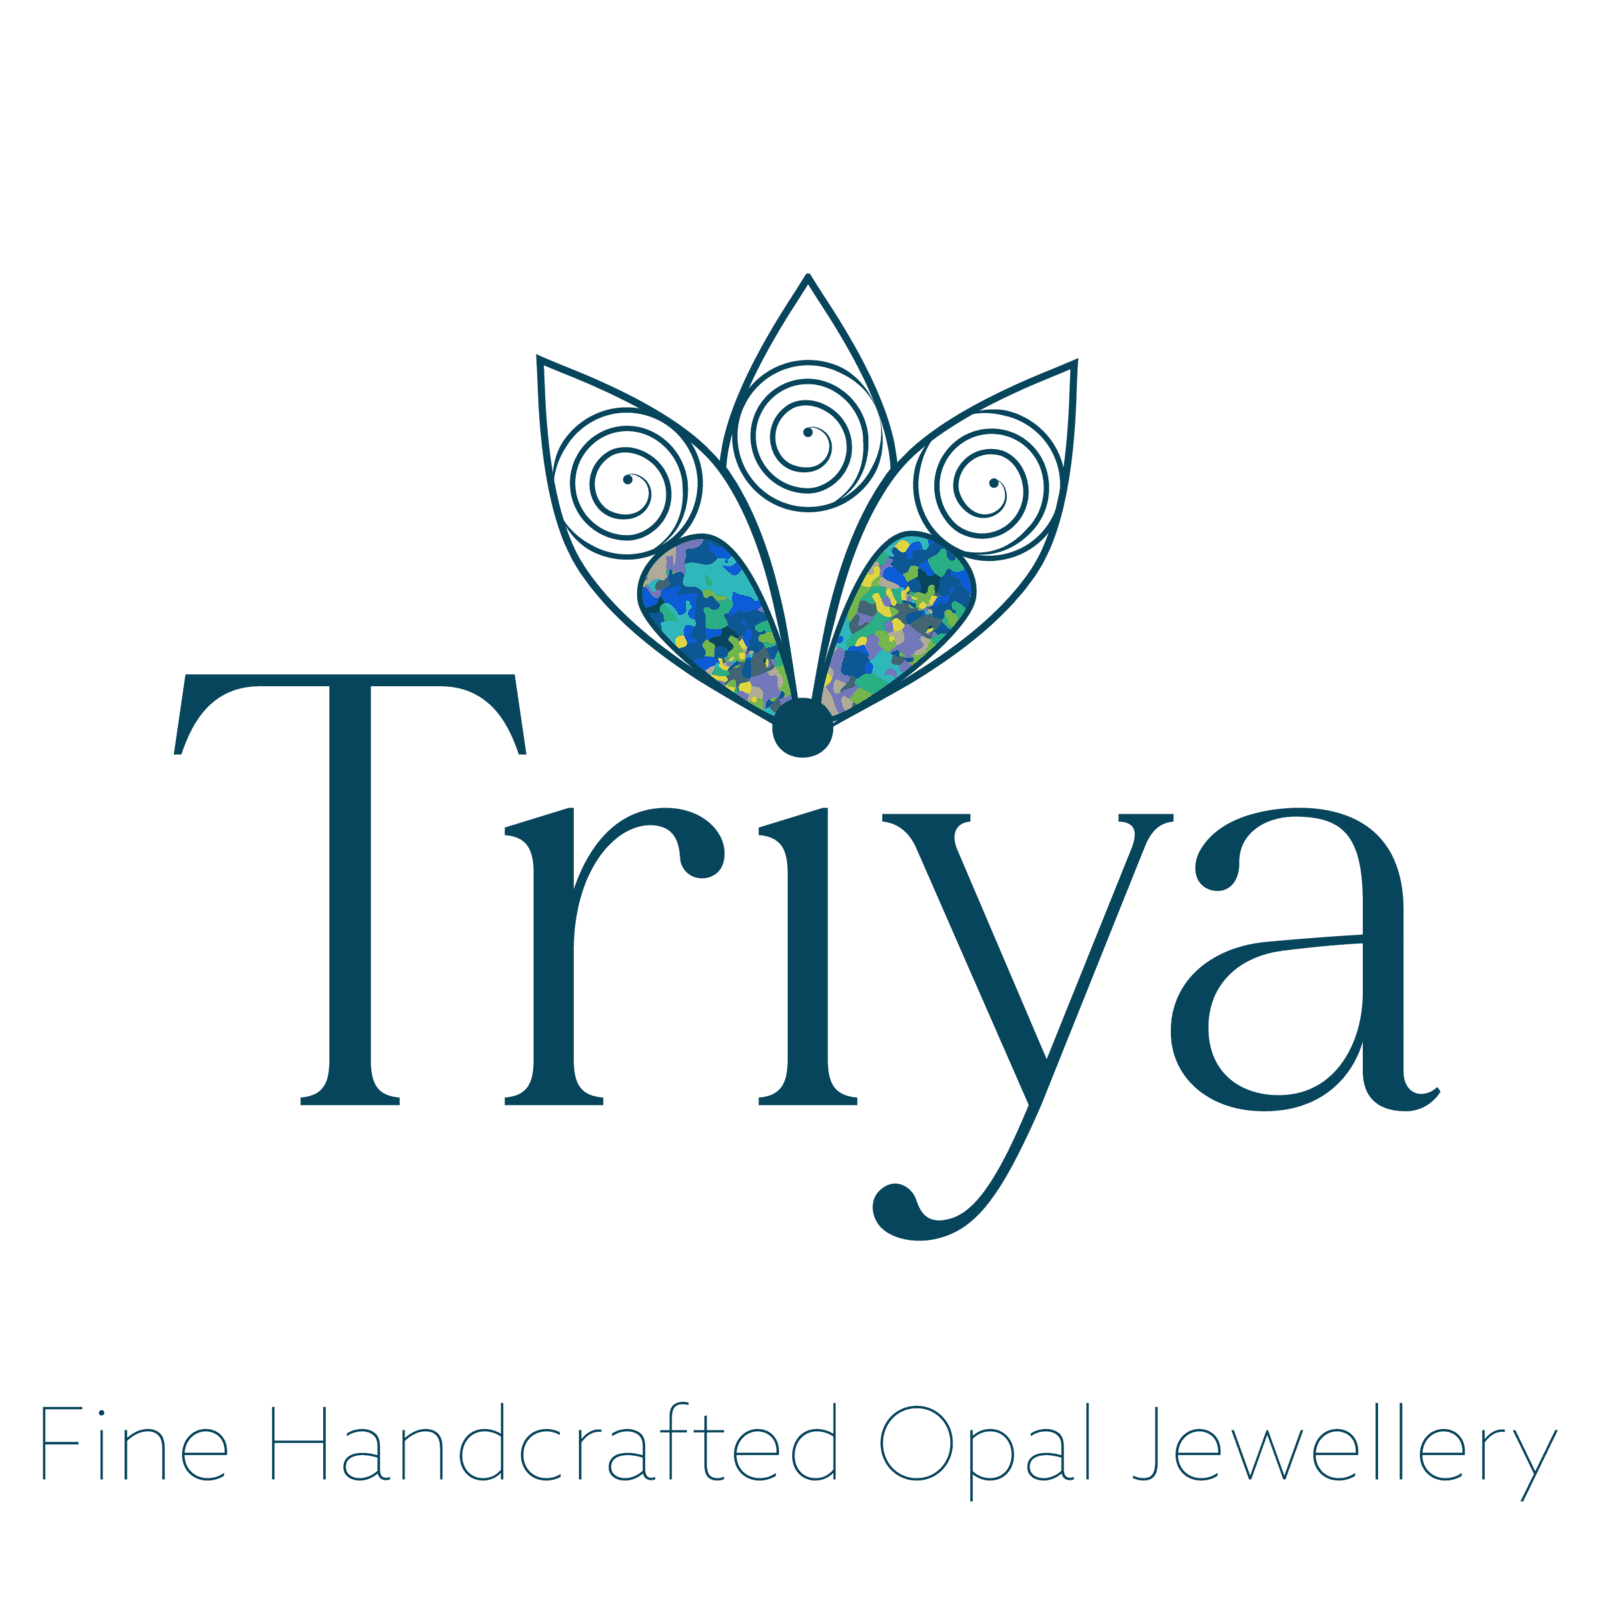 Triya Opals